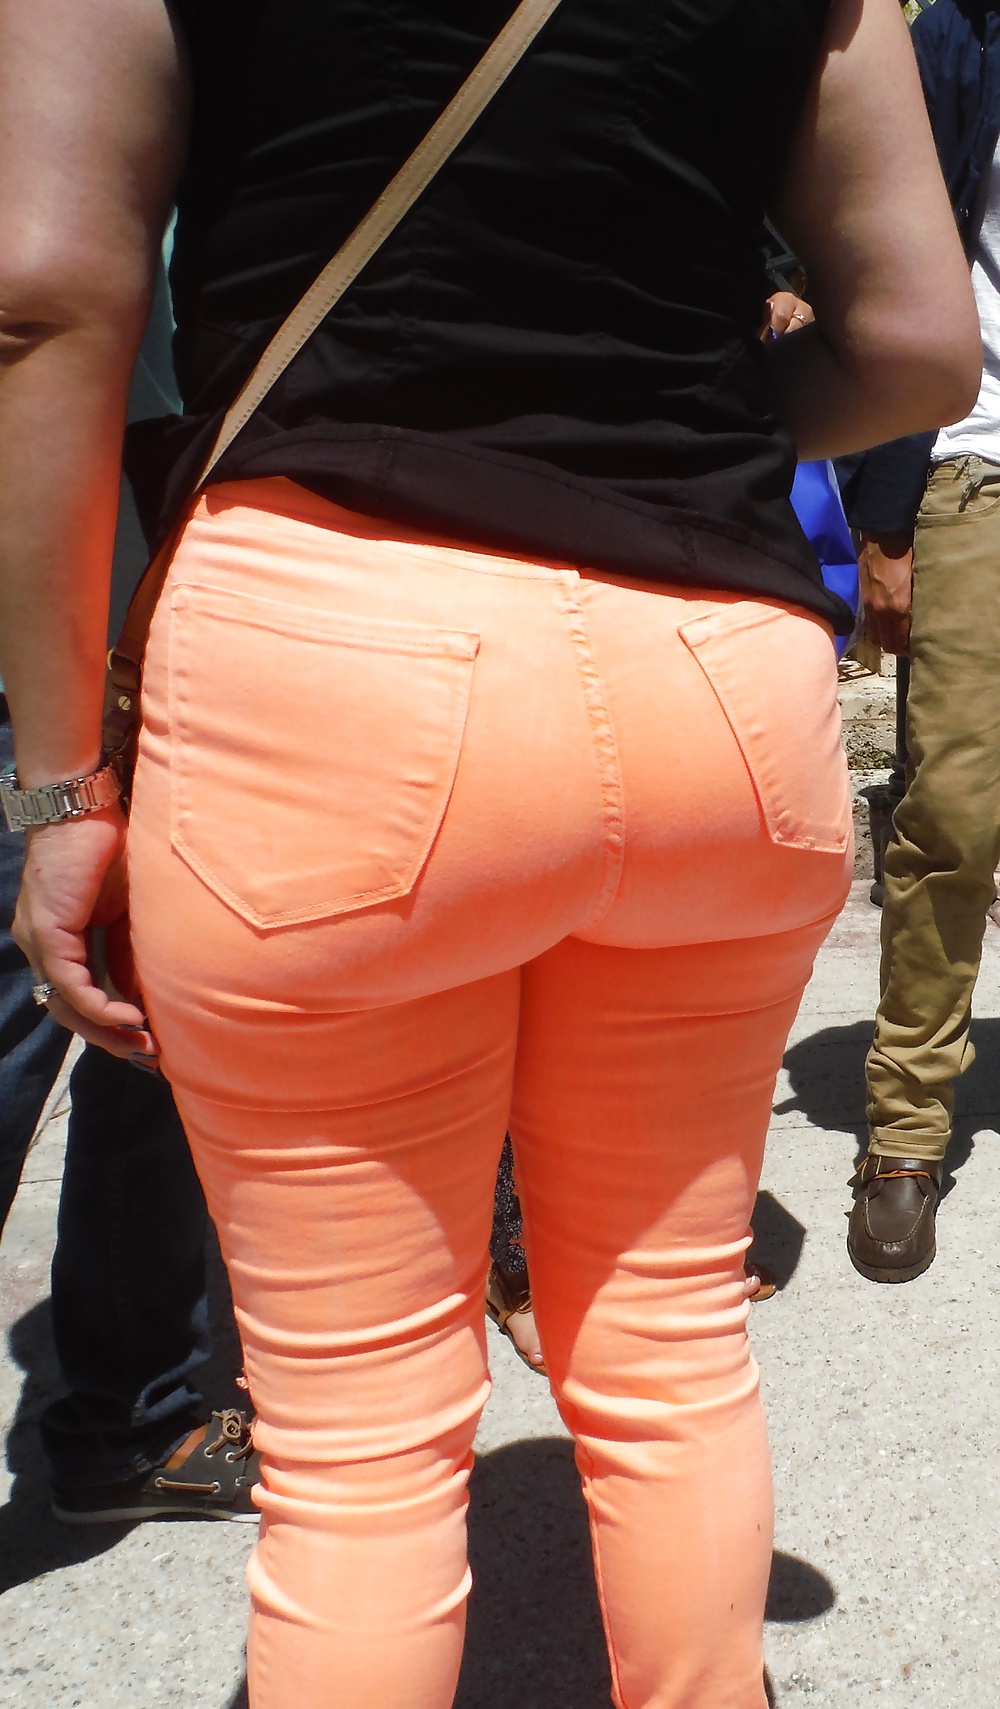 Popular teen girls ass & butt in jeans part 4  #26738445